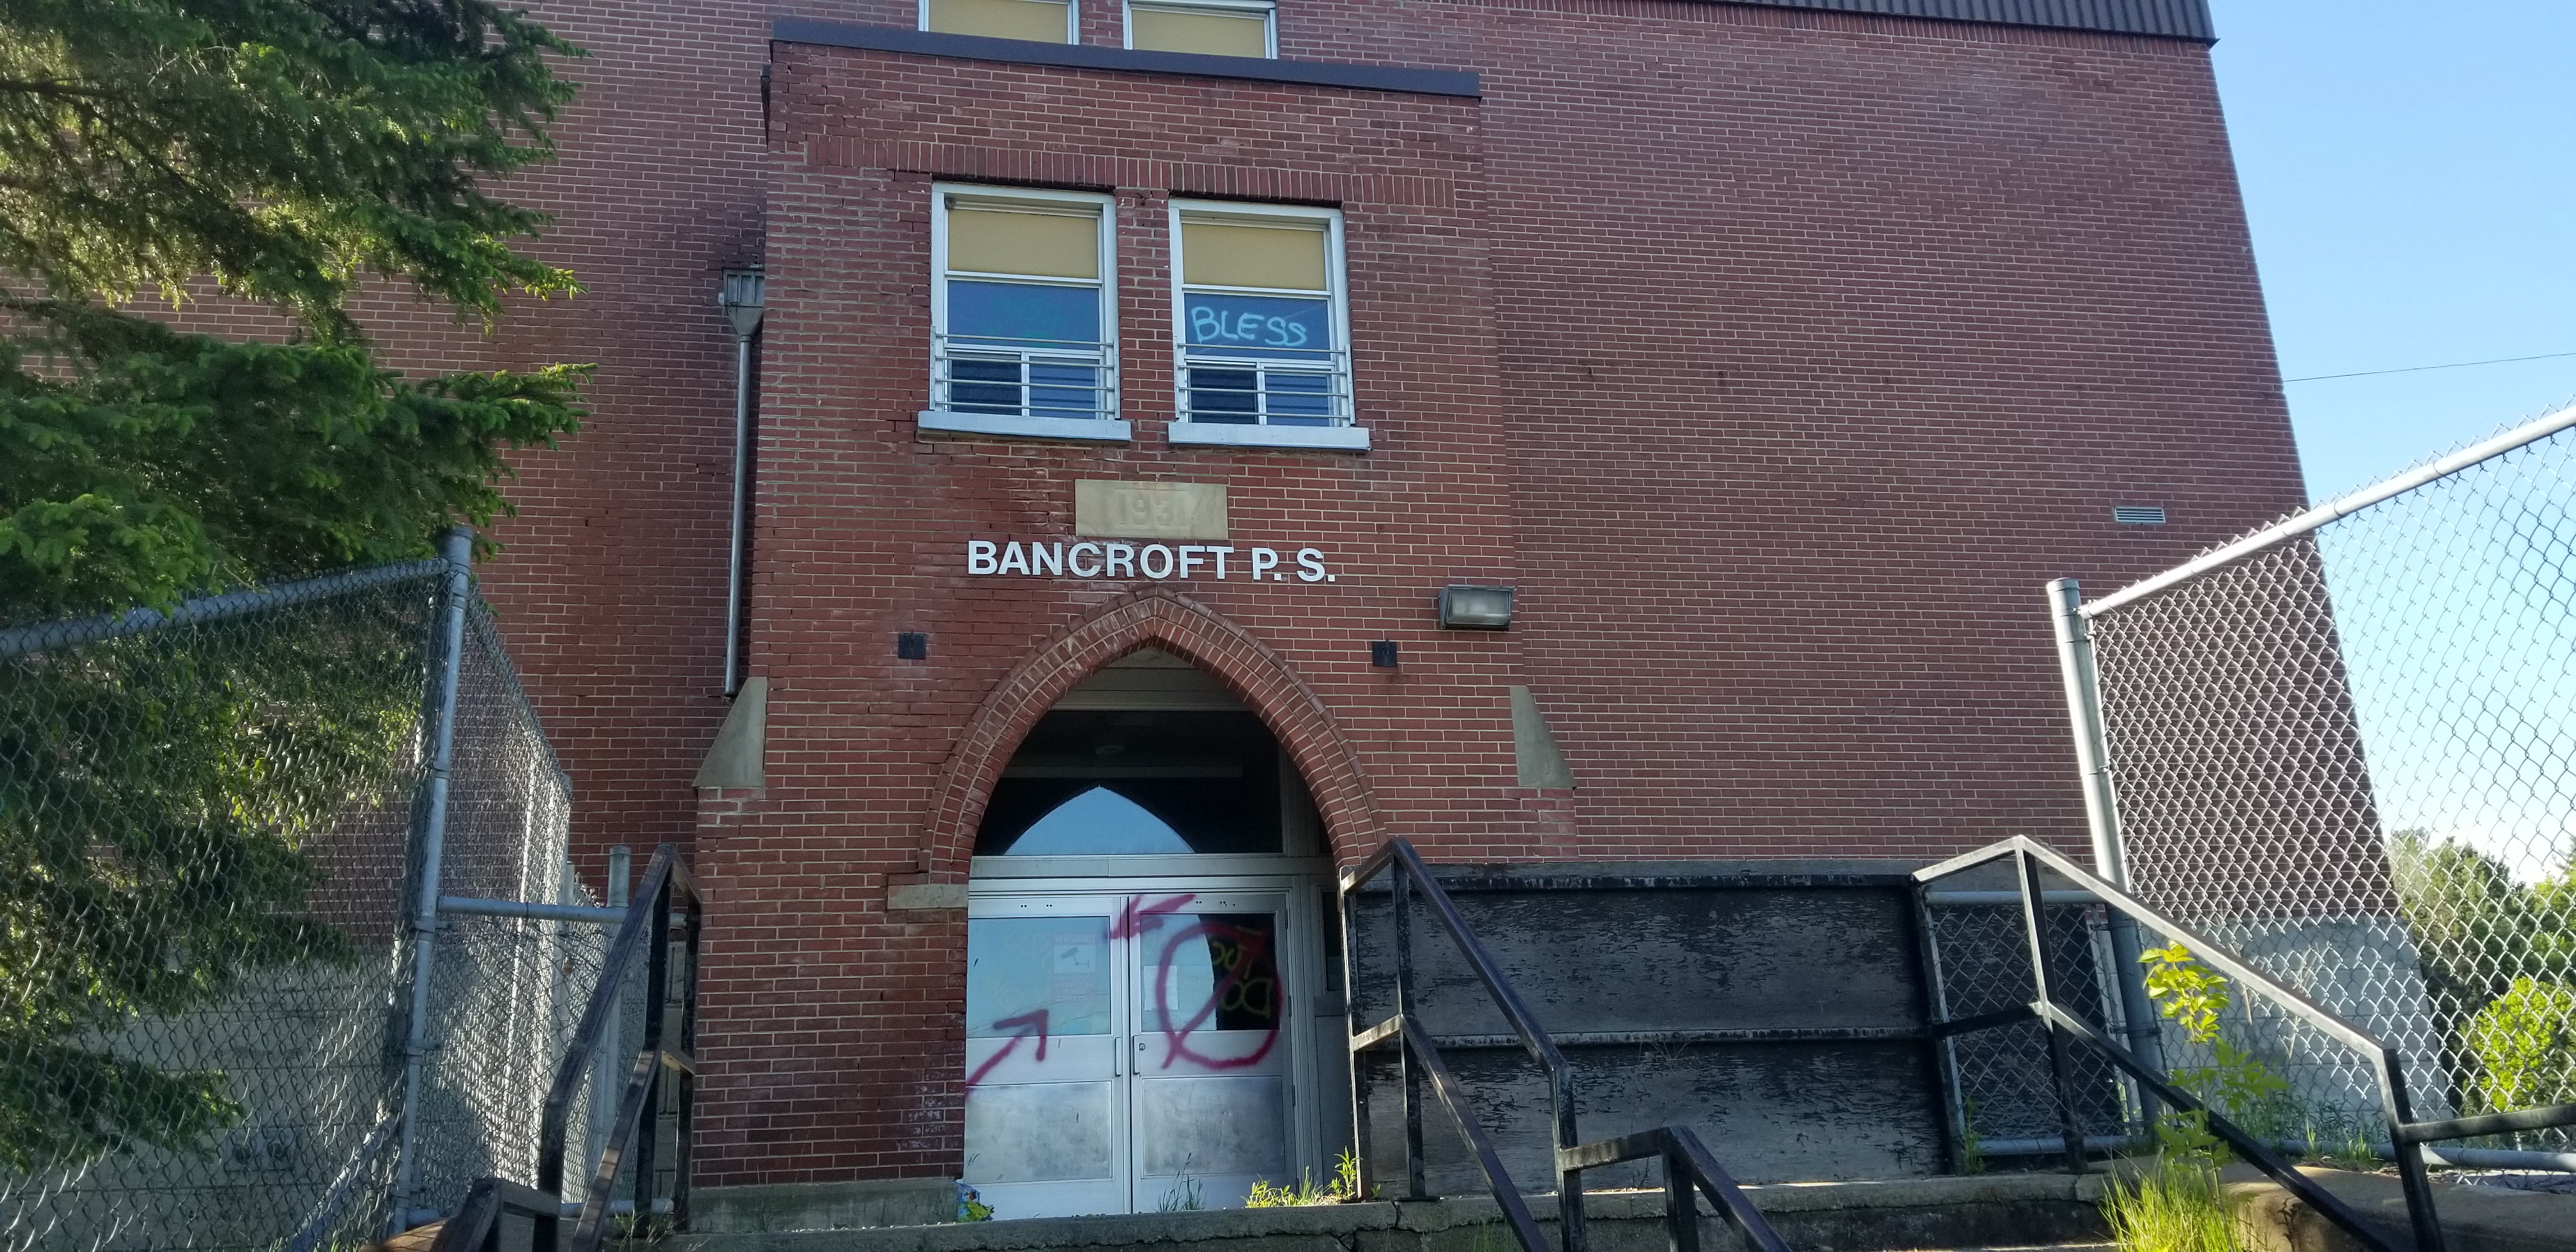 bancroft public school